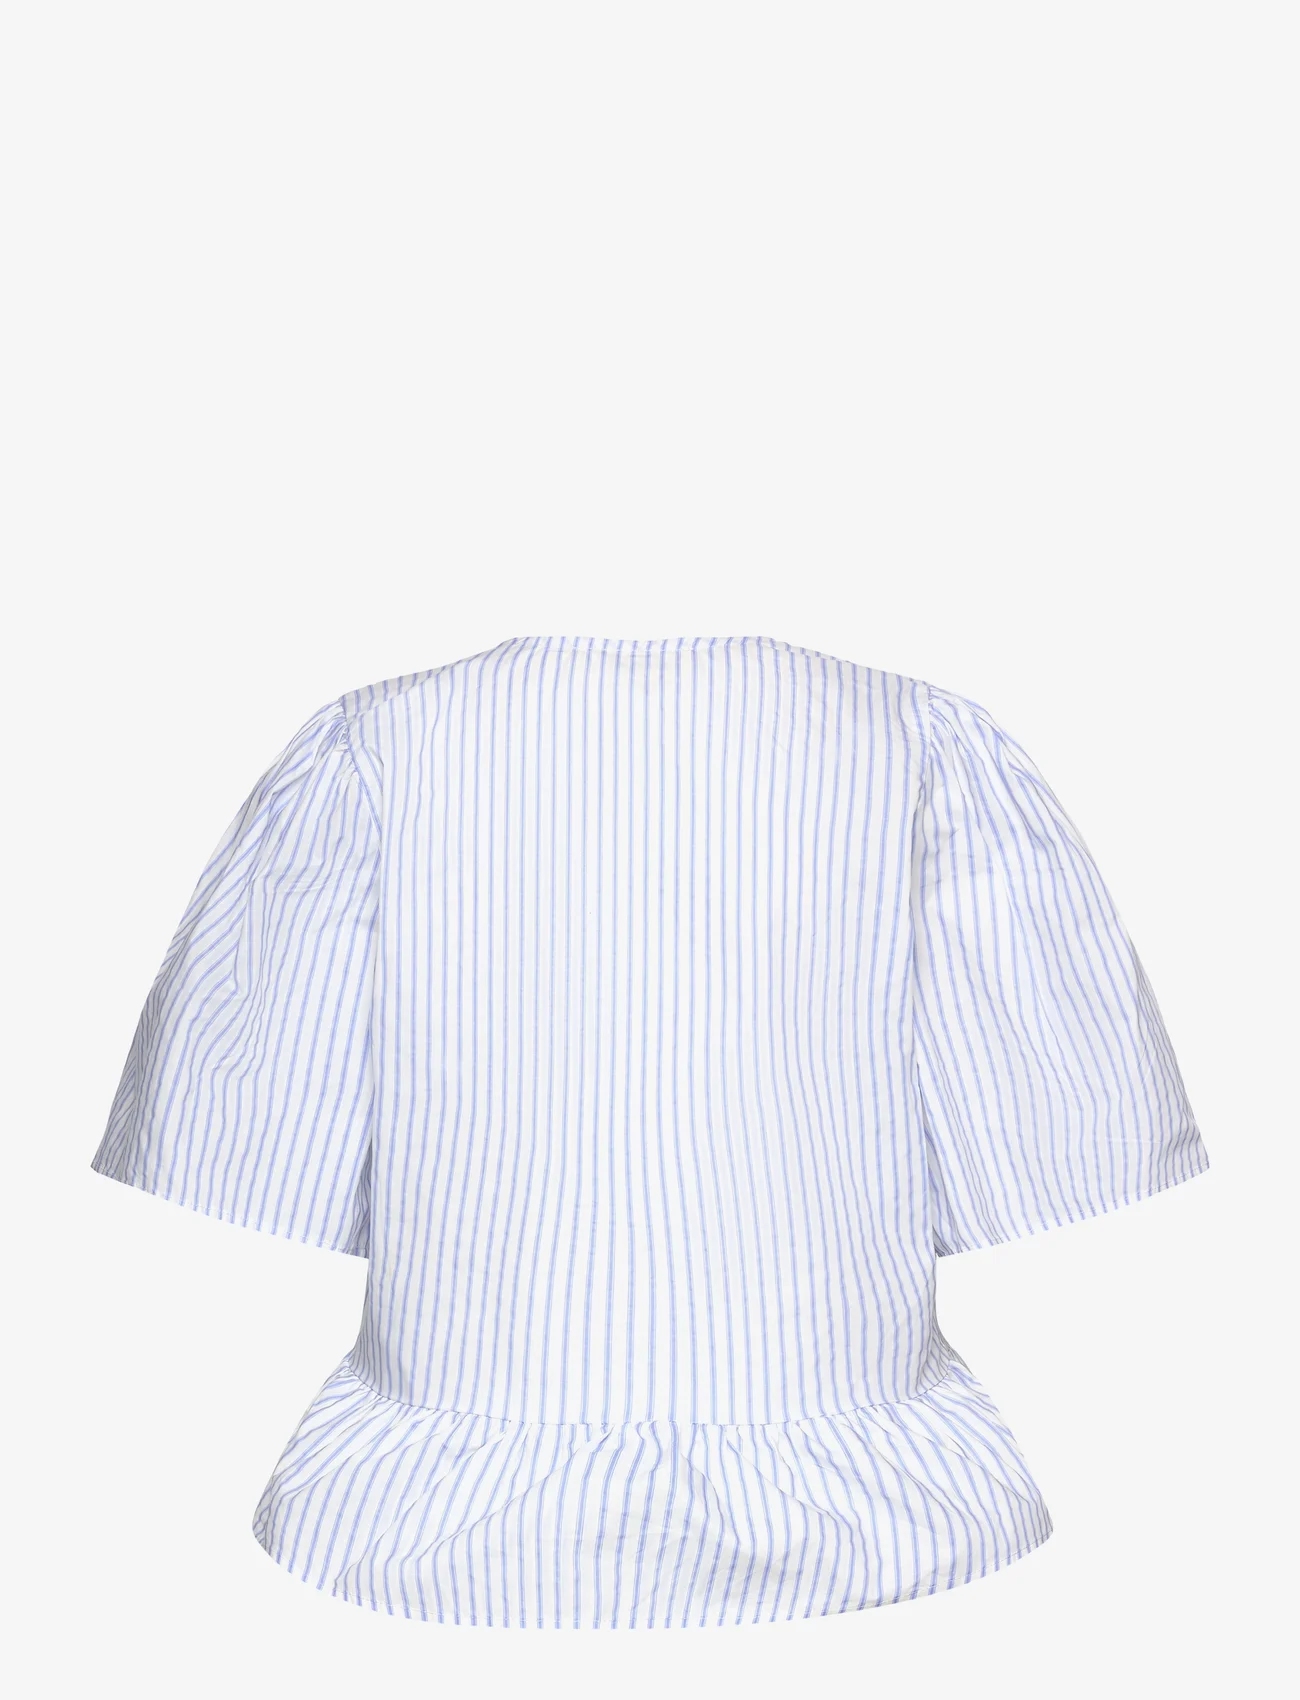 Sofie Schnoor - Shirt - short-sleeved blouses - light blue striped - 1